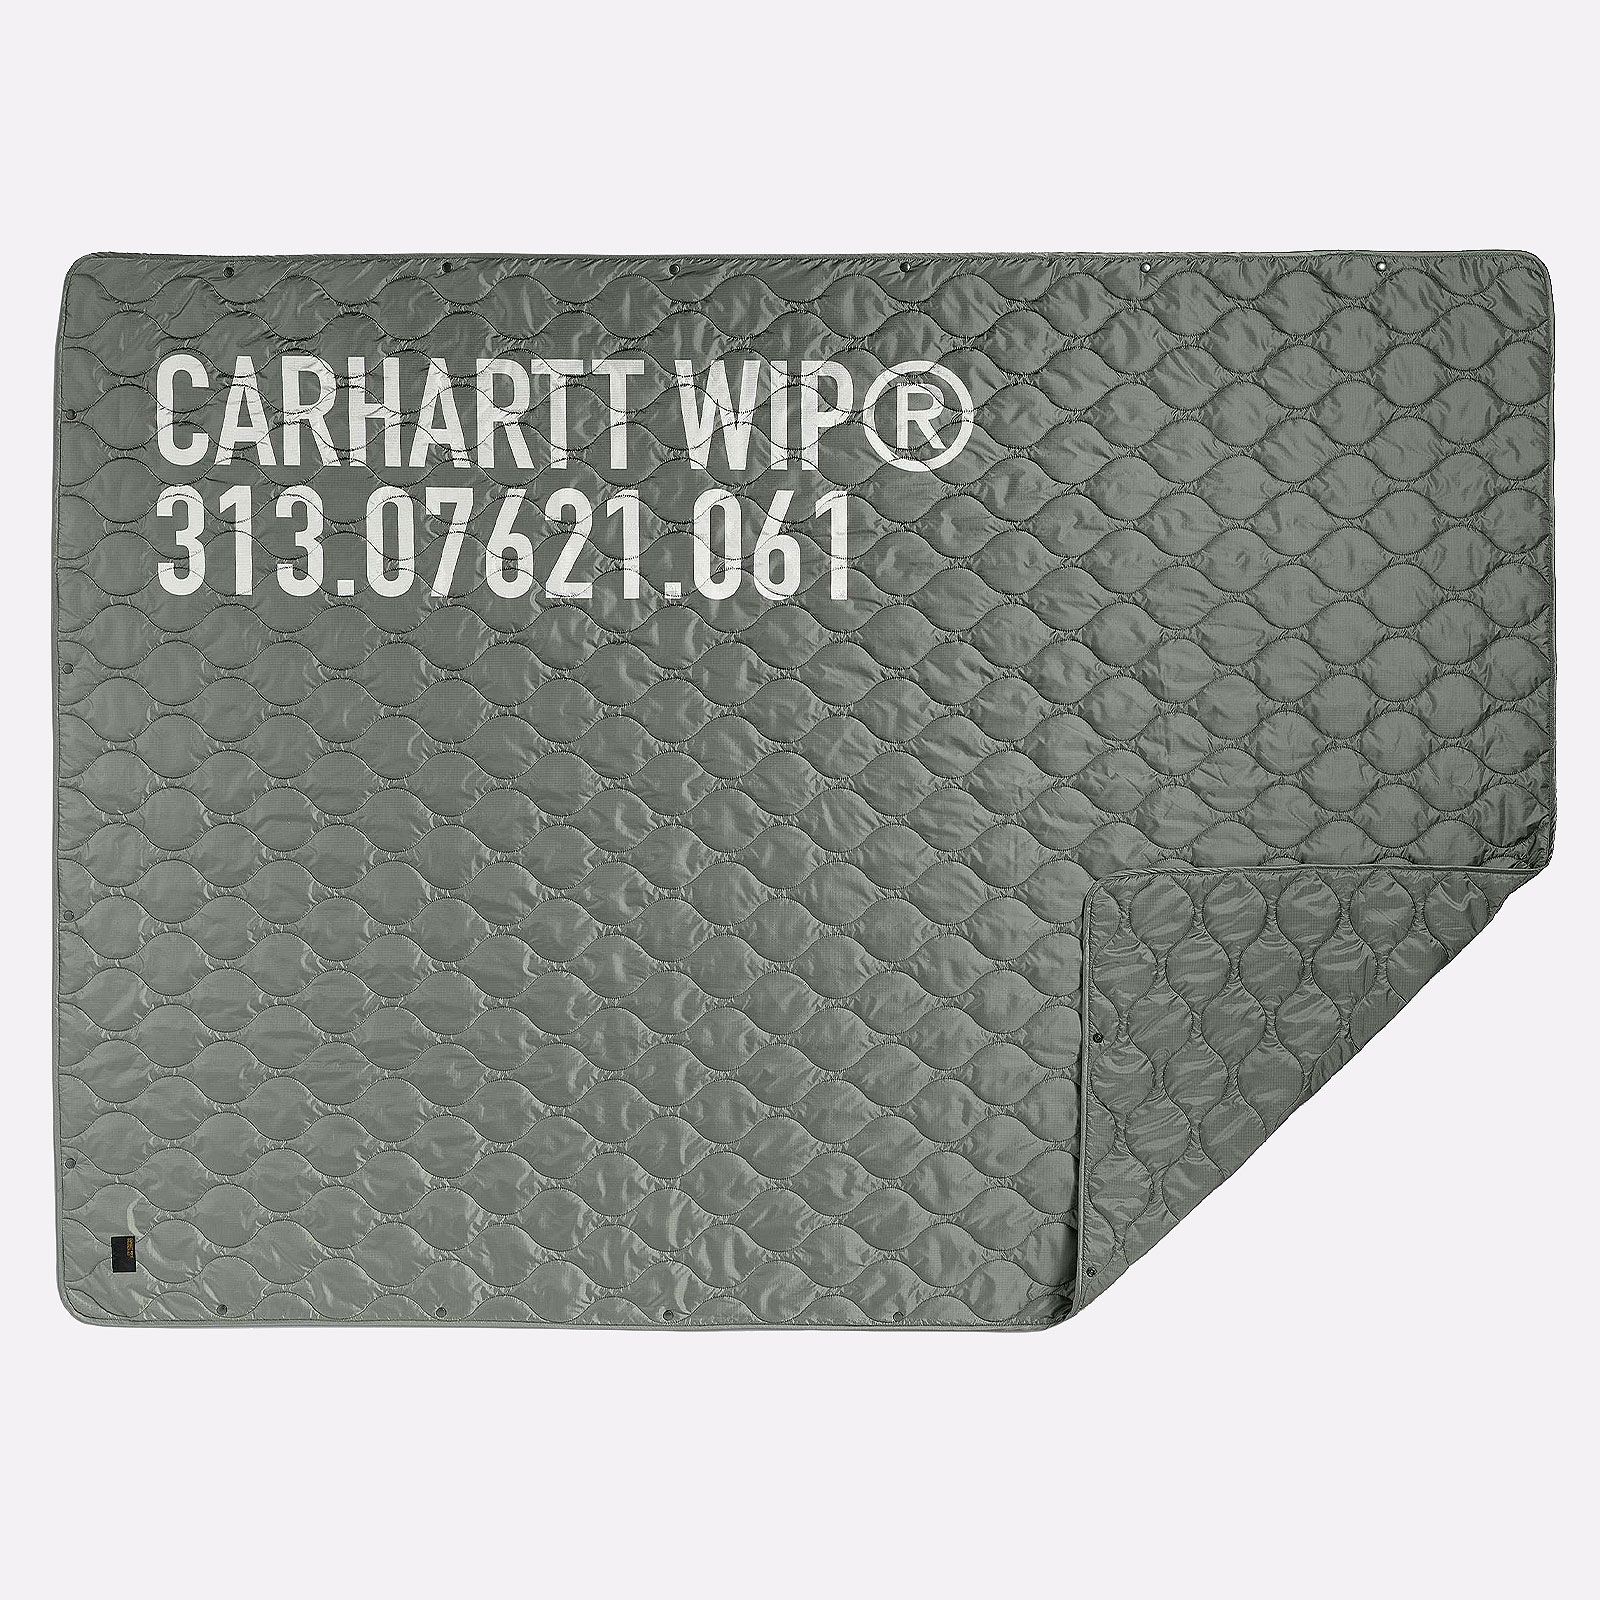  зеленый плед Carhartt WIP Tour Quiled Blanket I032492-green/ref - цена, описание, фото 1